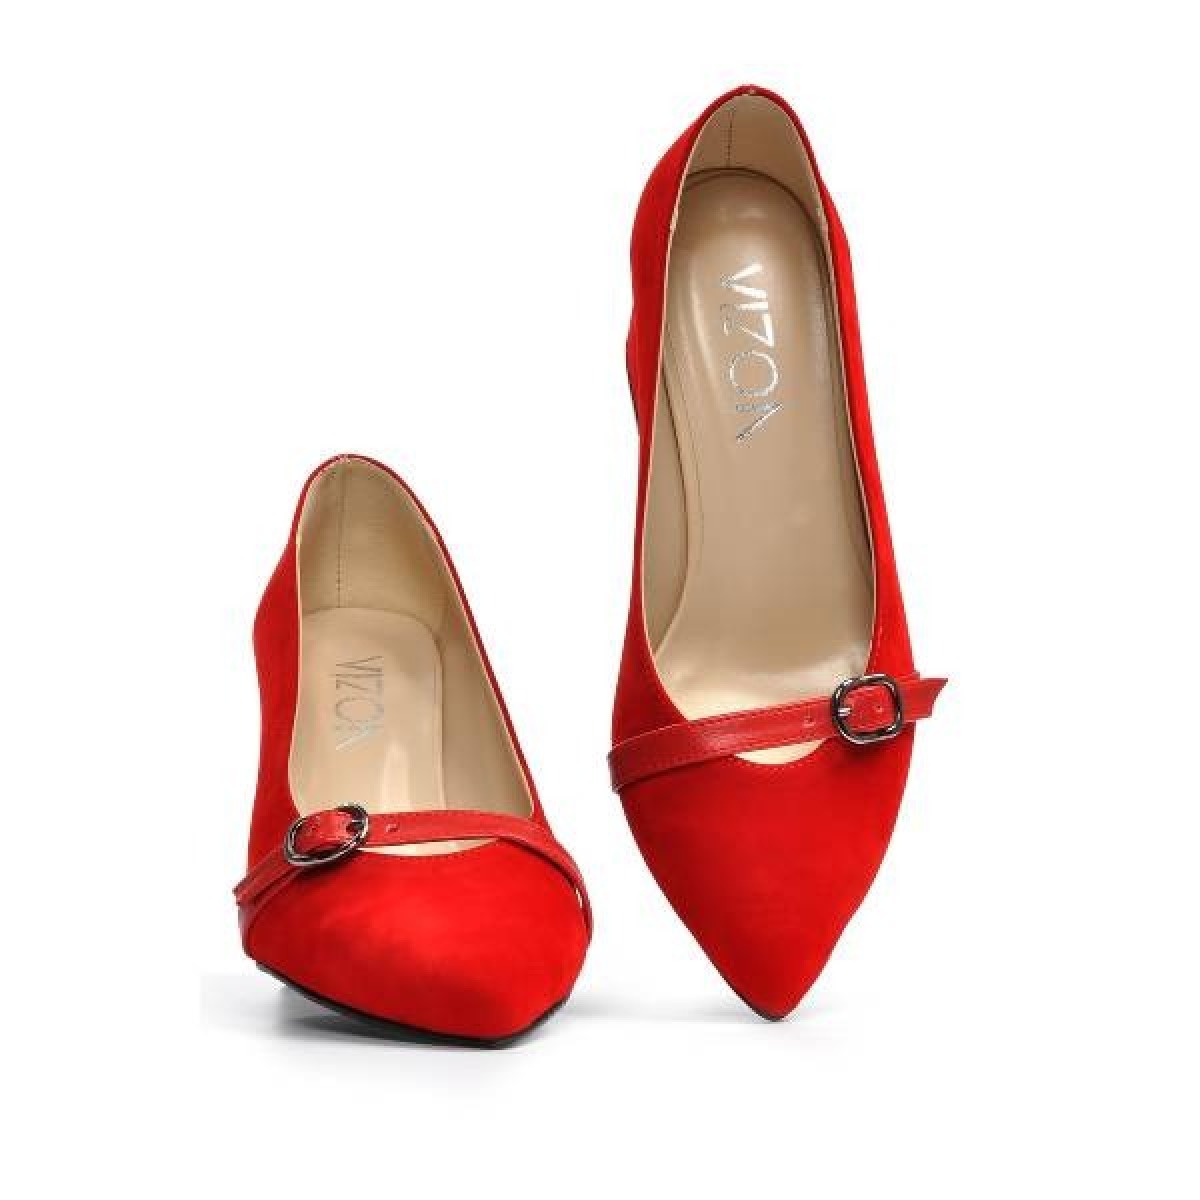 Flo Kadın  Kırmızı-Süet Klasik Topuklu Ayakkabı VZN19-110K. 7